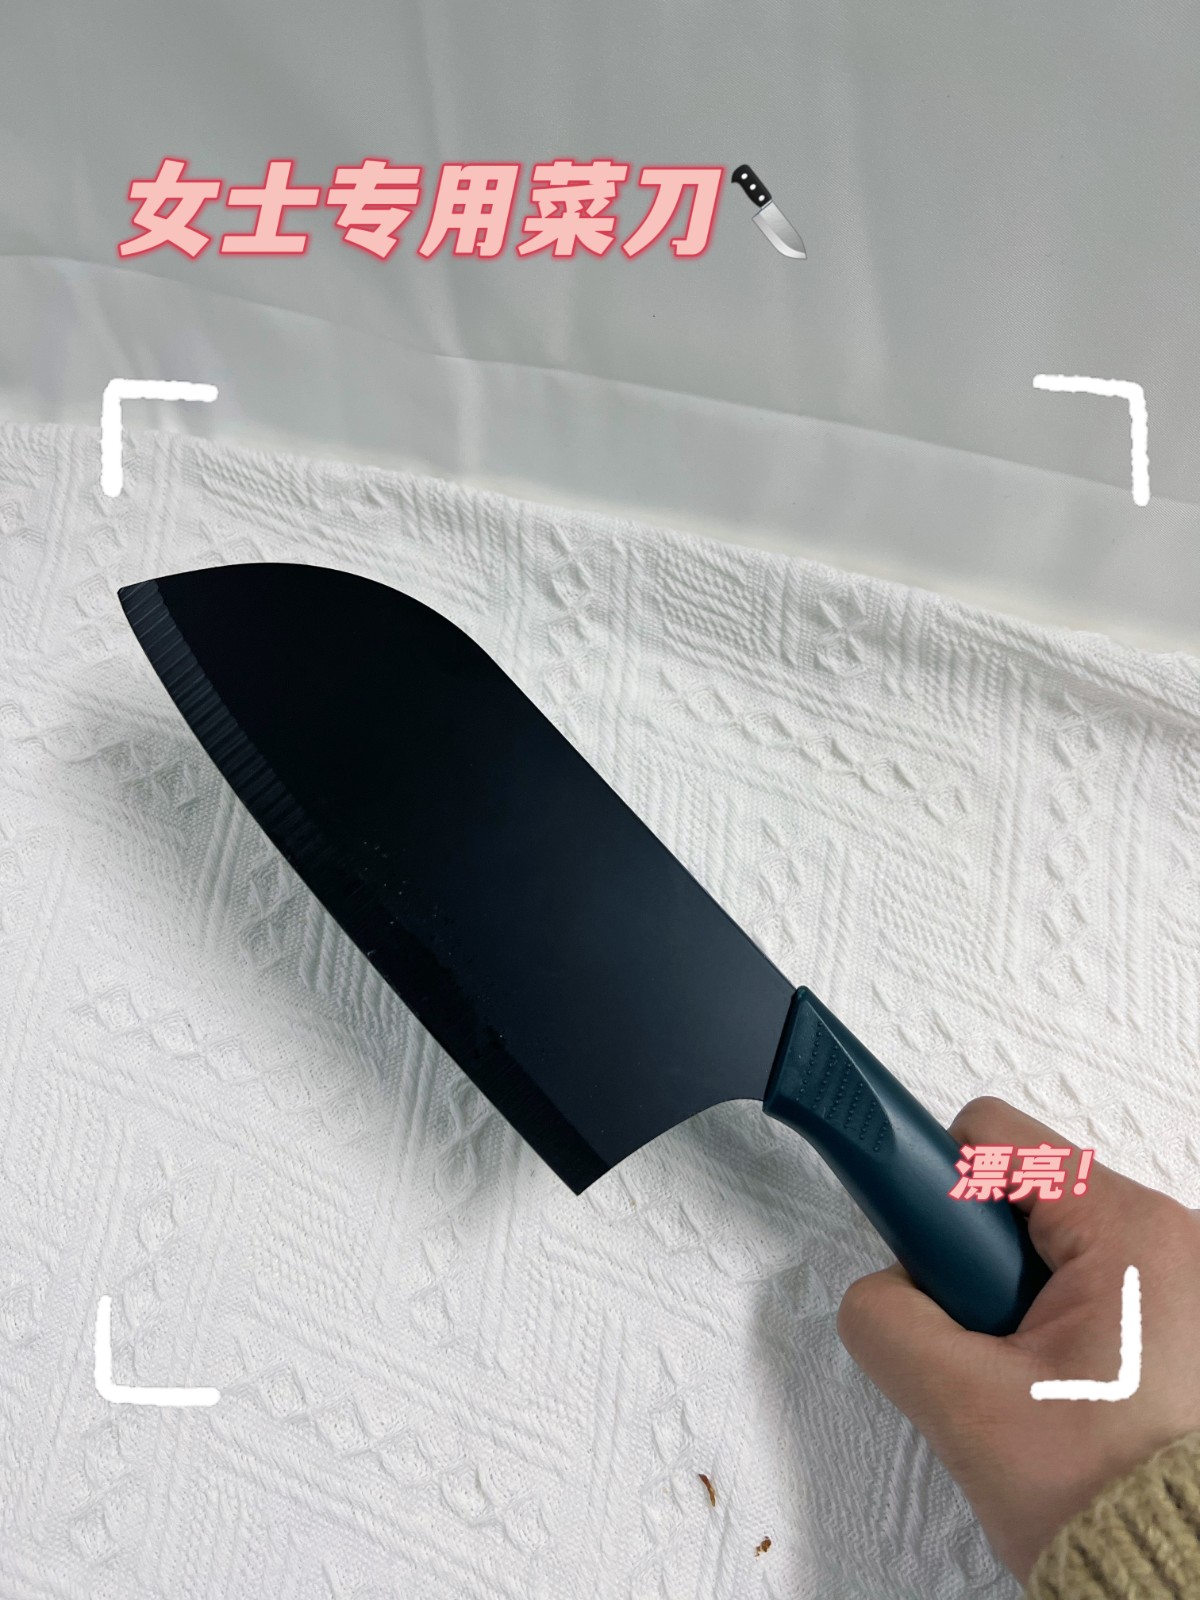 女士专用菜刀刀具厨房家用超快锋利不锈钢中式厨师切肉切片切菜刀